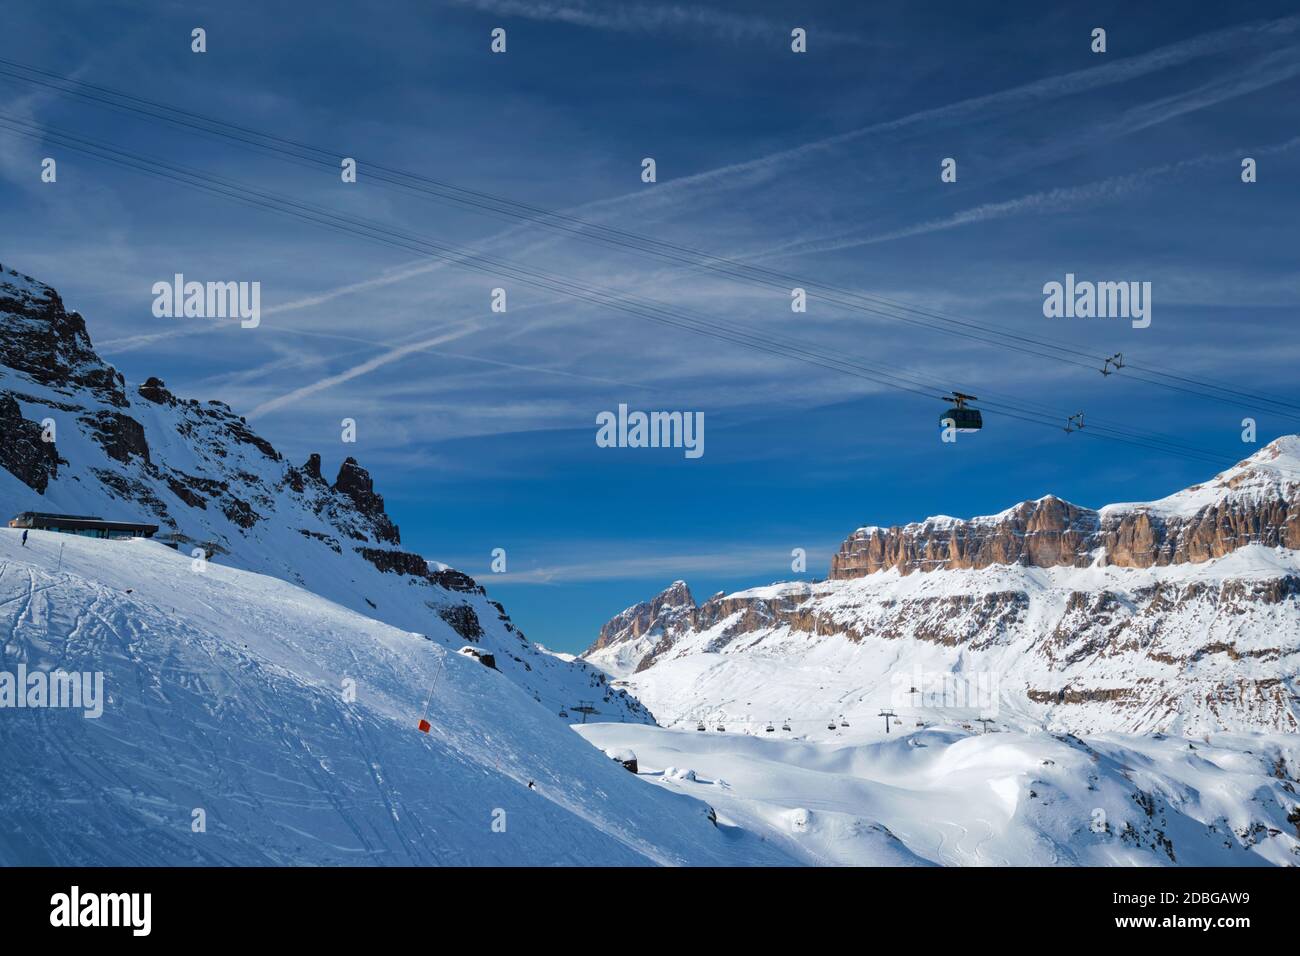 Vue sur une station de ski avec des personnes qui skient dans les Dolomites en Italie avec télécabine. Domaine skiable Arabba. Arabba, Italie Banque D'Images